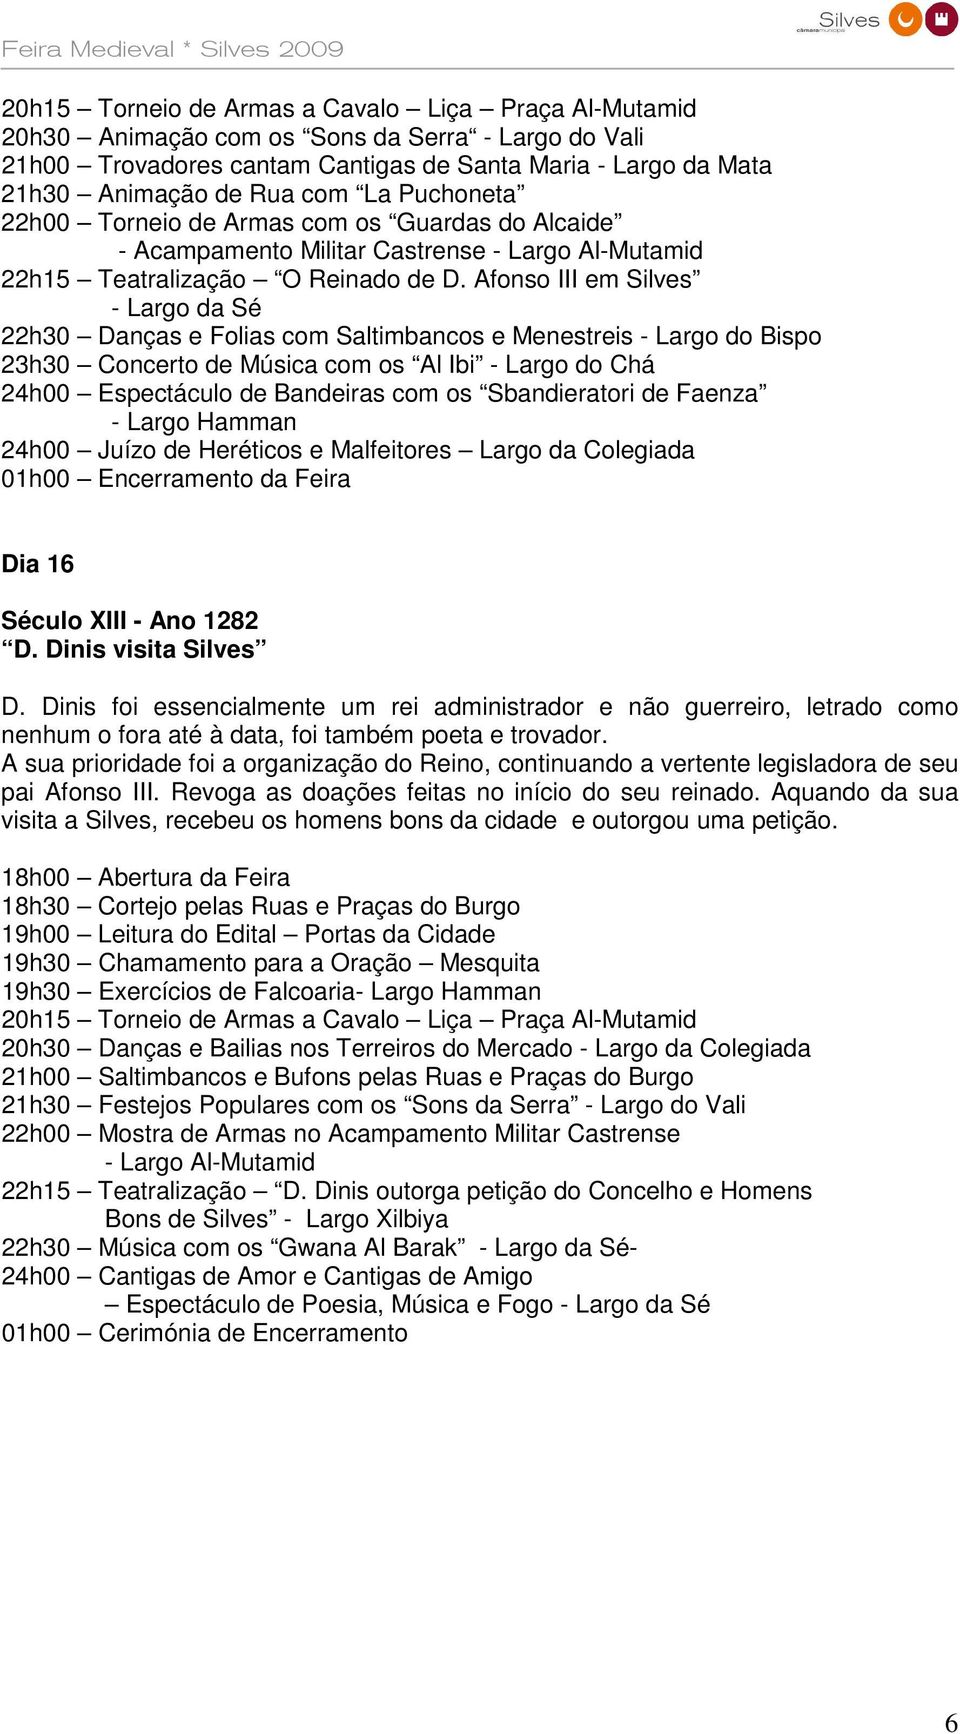 Afonso III em Silves - Largo da Sé 22h30 Danças e Folias com Saltimbancos e Menestreis - Largo do Bispo 23h30 Concerto de Música com os Al Ibi - Largo do Chá 24h00 Espectáculo de Bandeiras com os